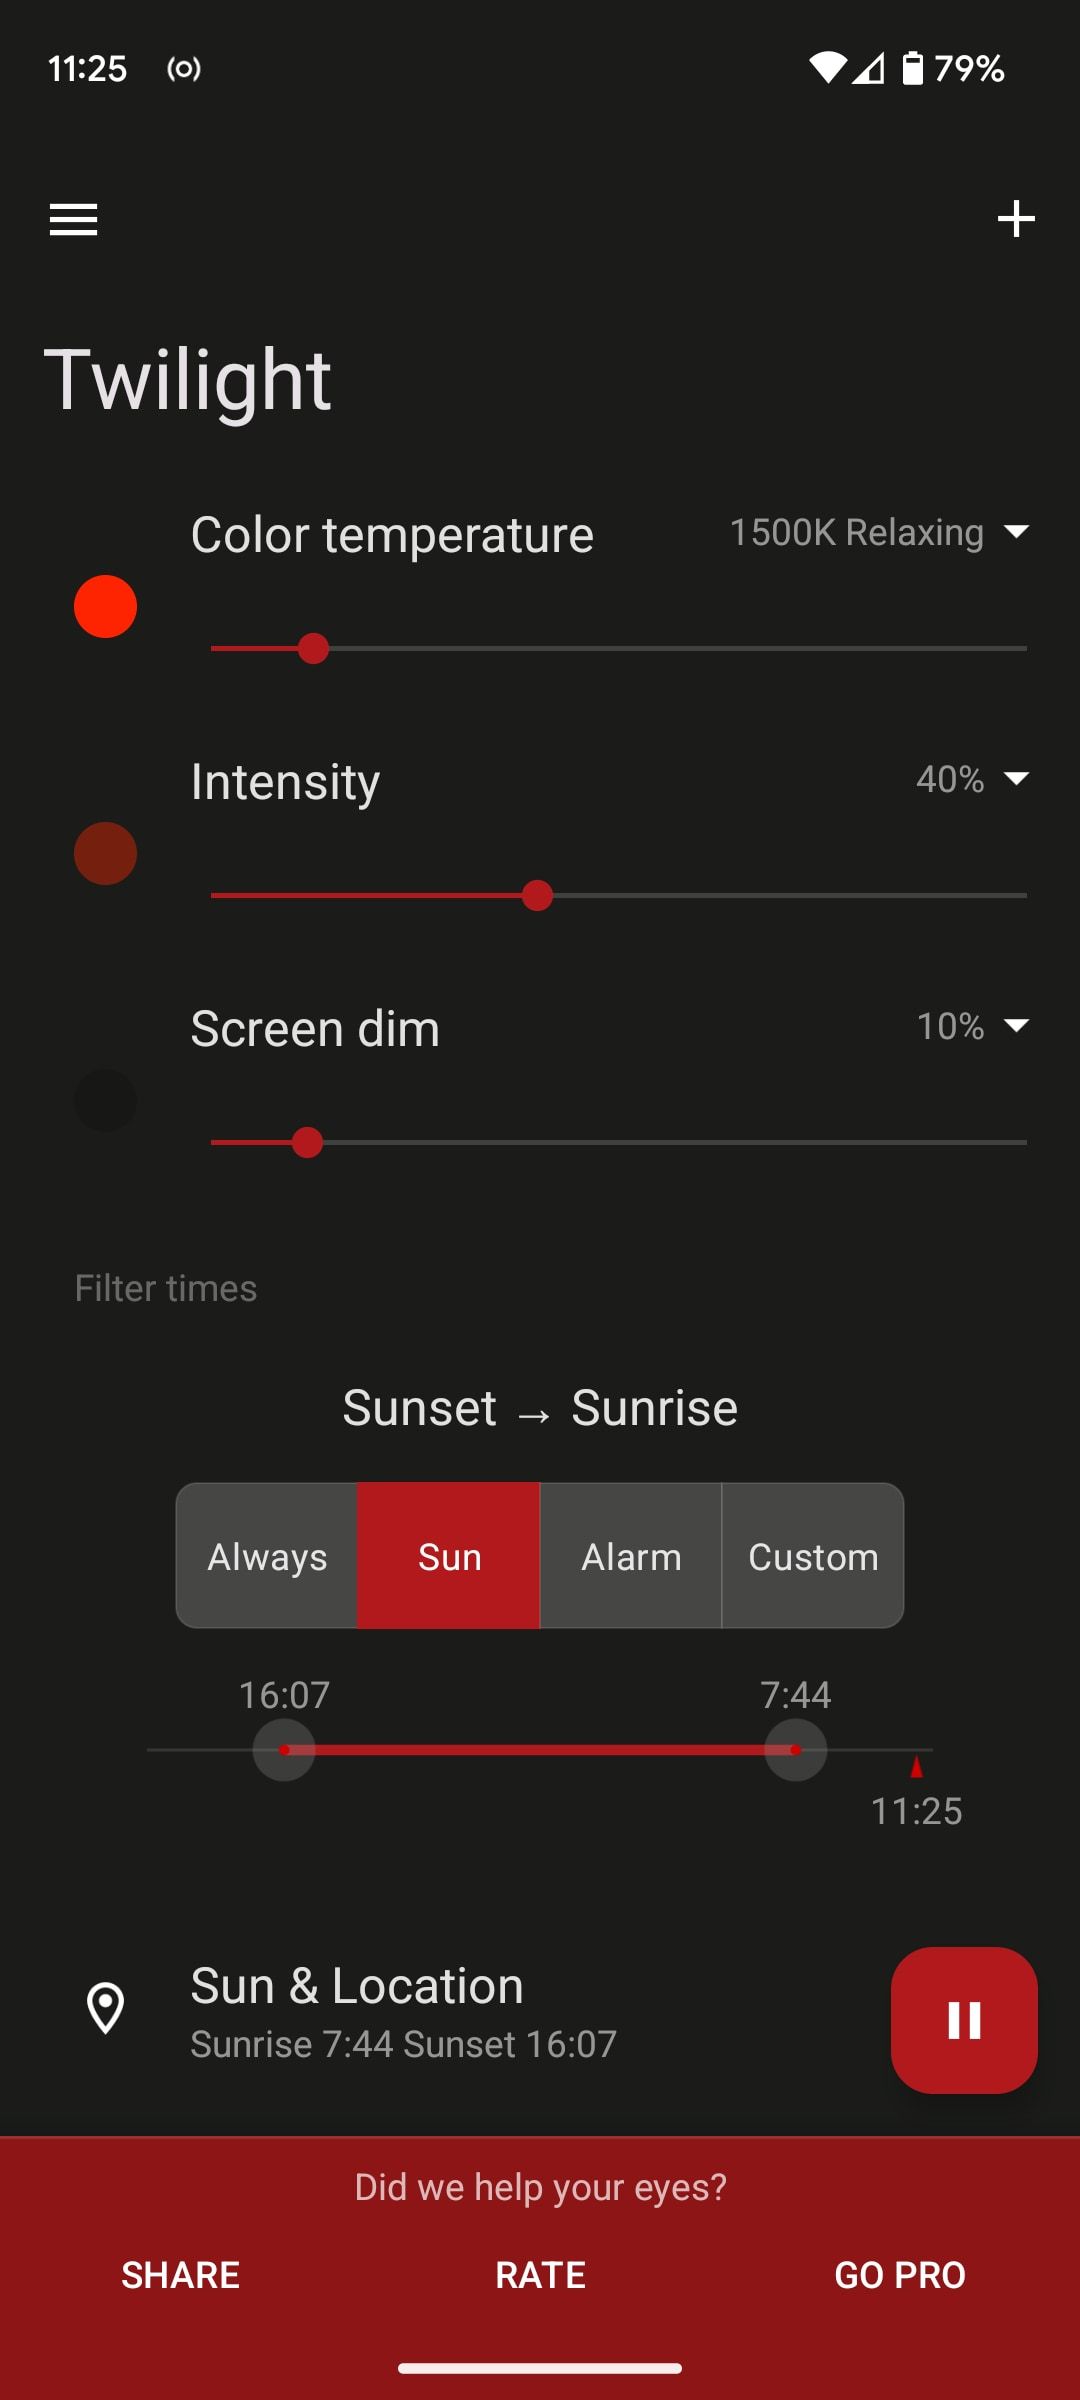 blue light filter settings in twilight app